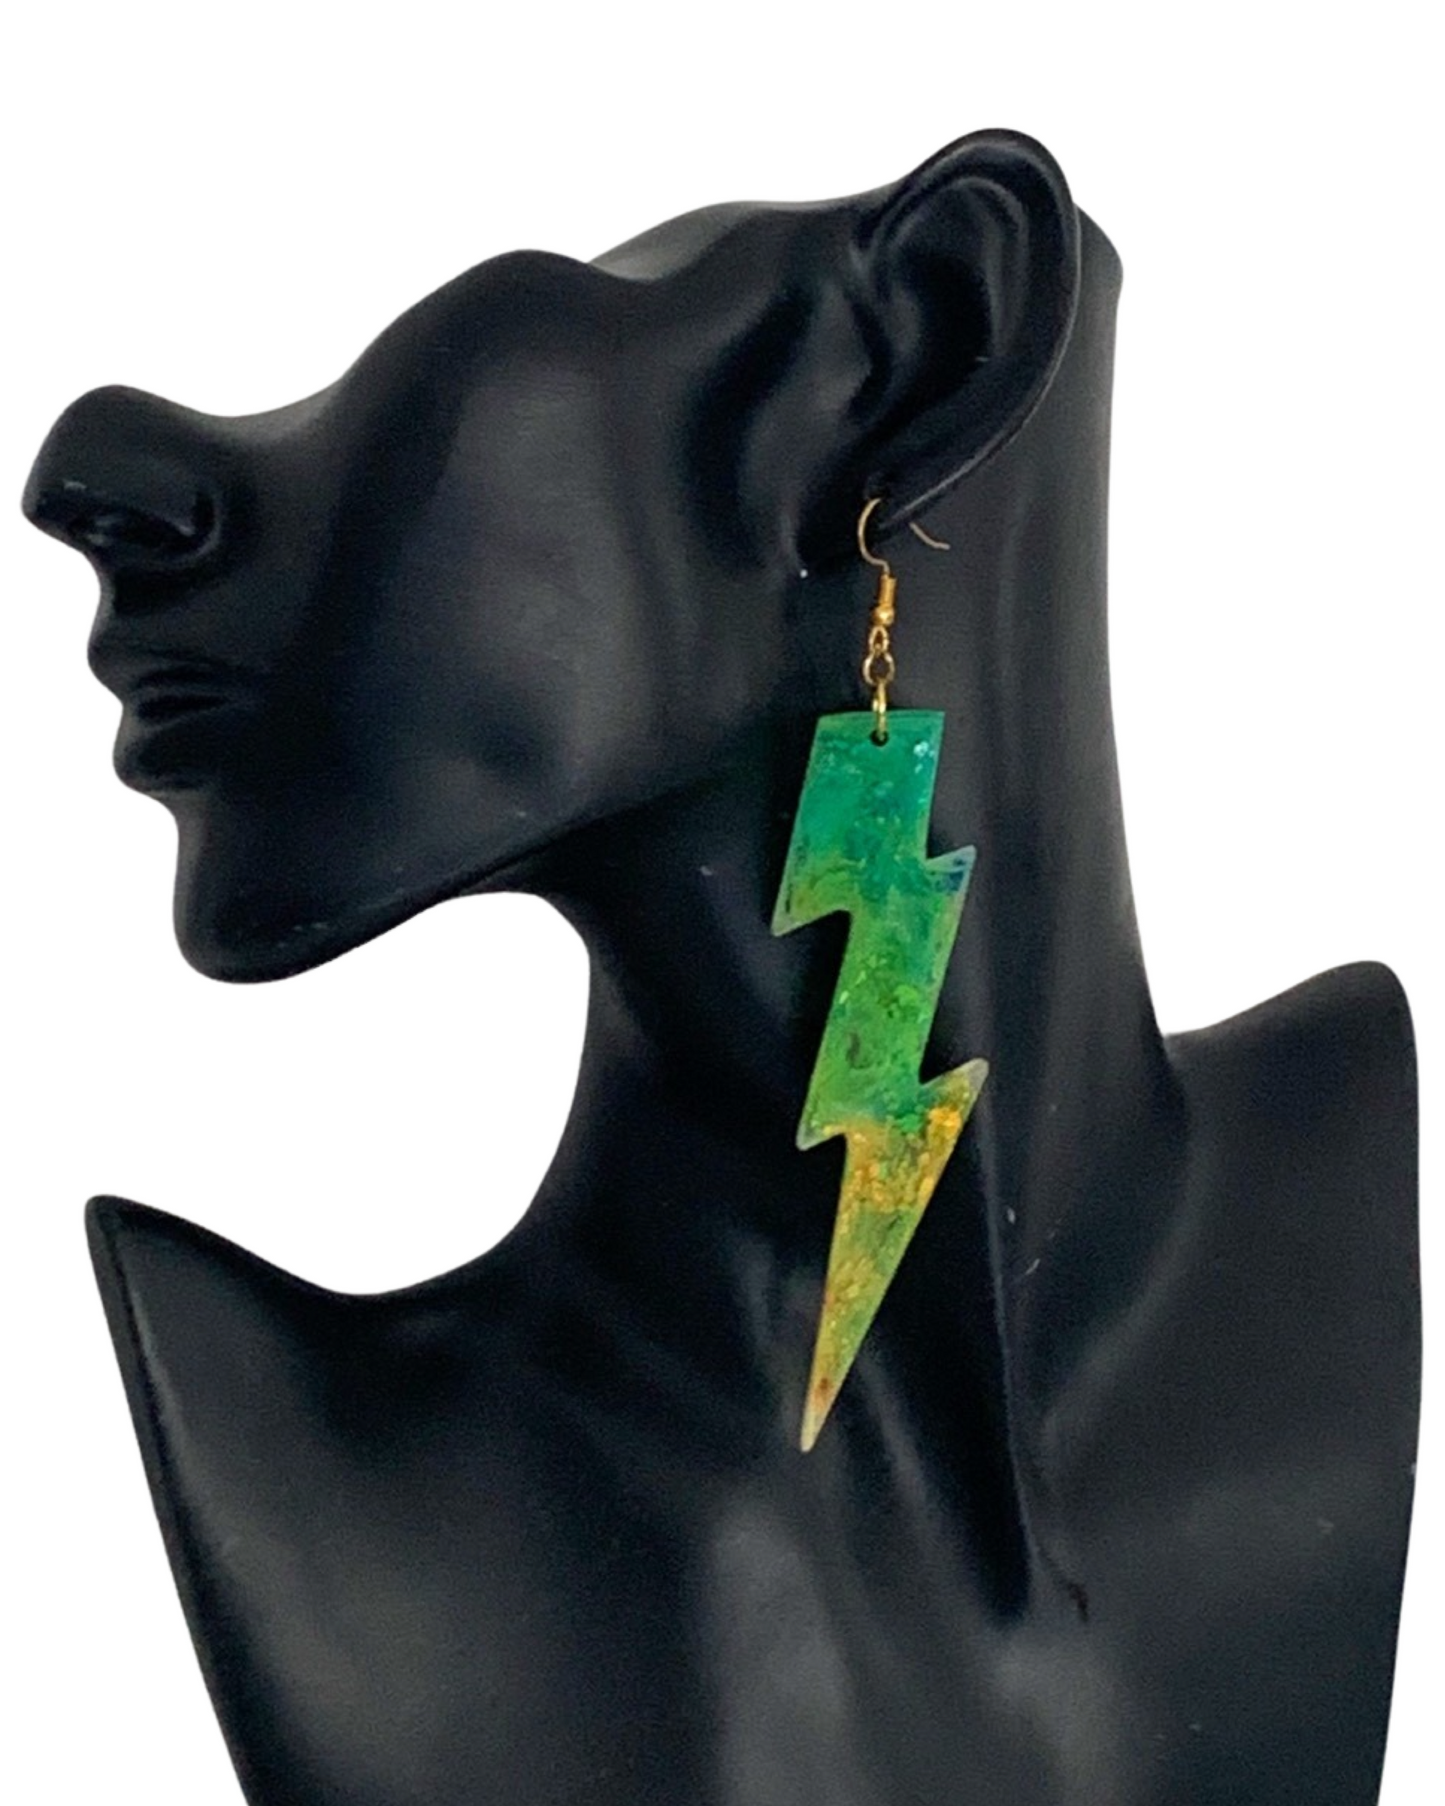 Green and Yellow Lightning Bolt Earrings, Gold Hooks